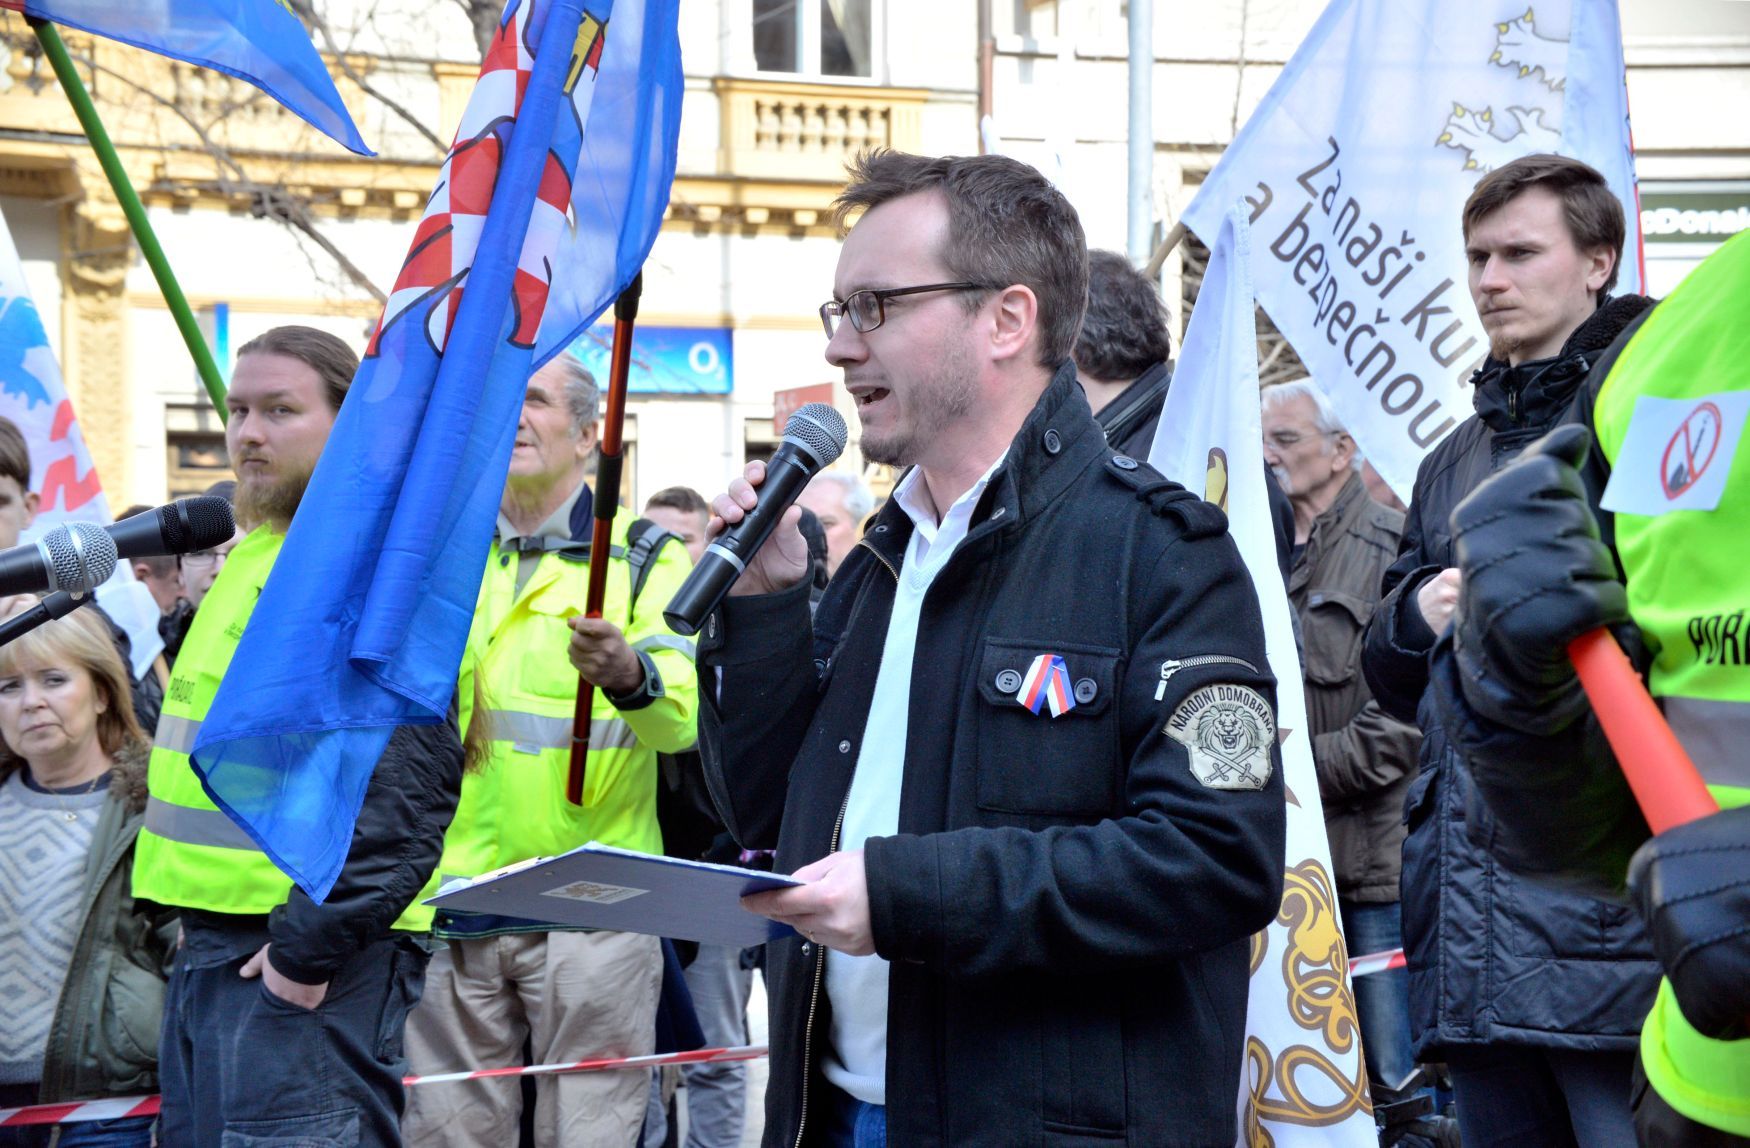 Adam B. Bartoš na demonstraci proti islamizaci, 26.3.2016